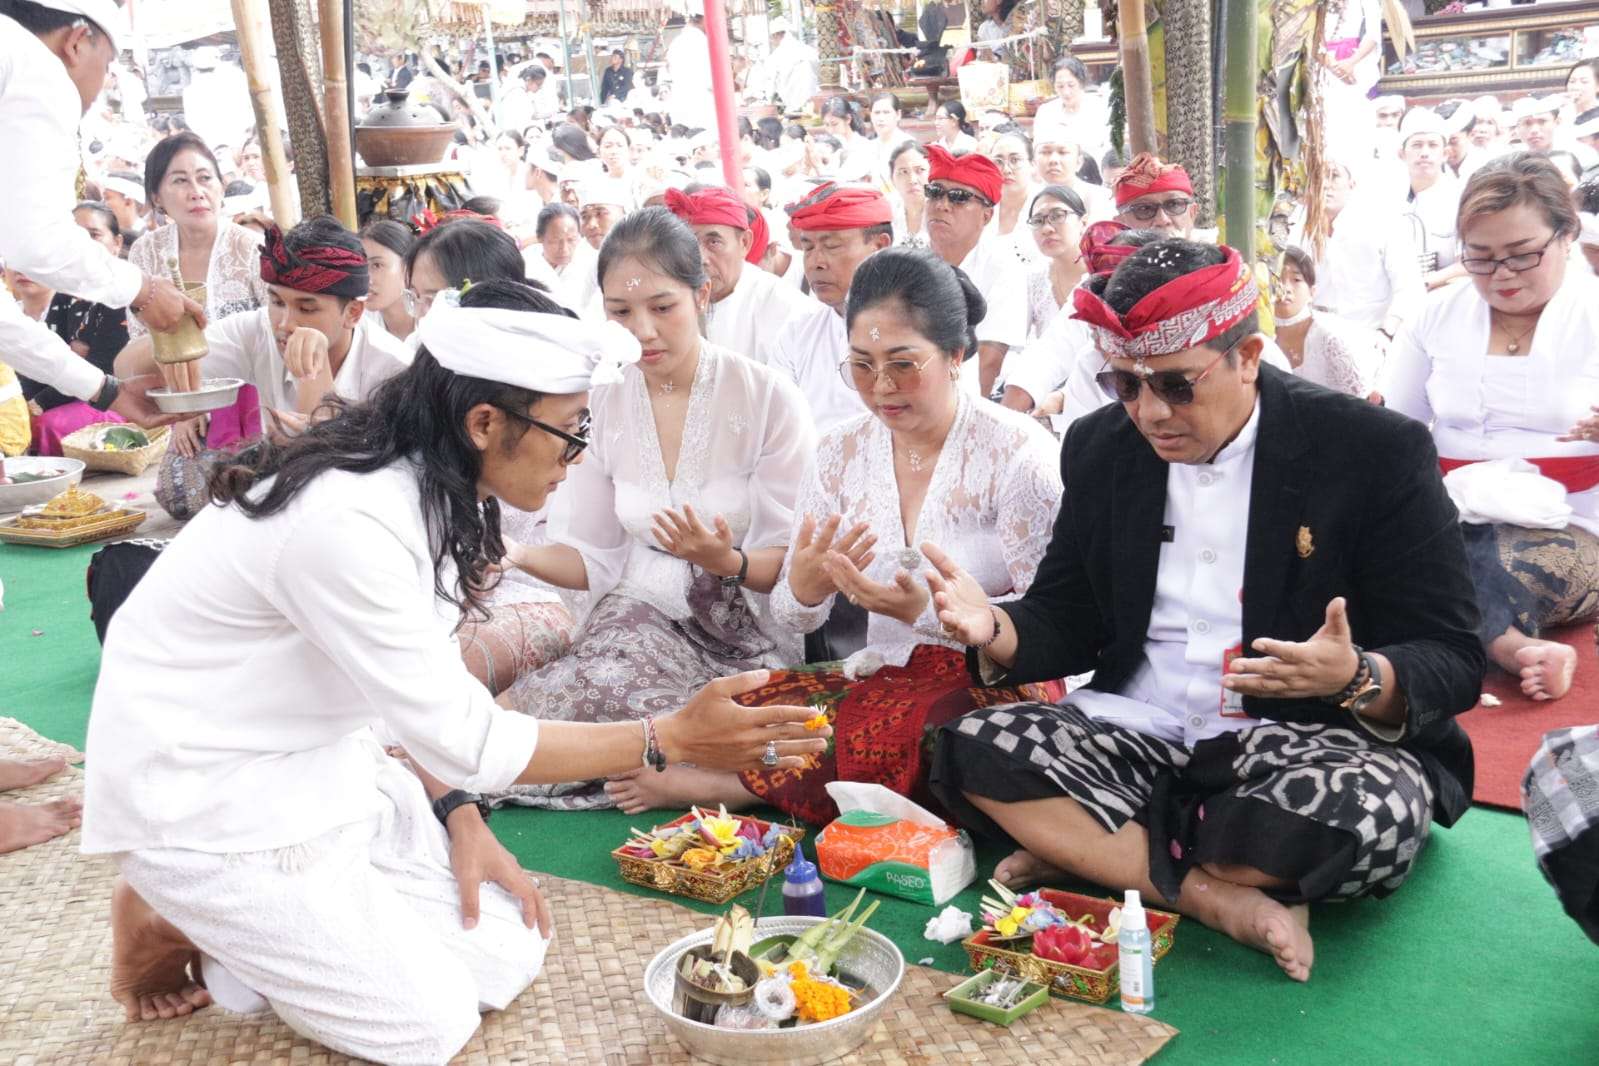 Bupati Sanjaya Pimpin Bhakti Penganyar di Pura Ulun Danu Batur, Ajak Masyarakat Jaga Kebersamaan dan Kekompakan